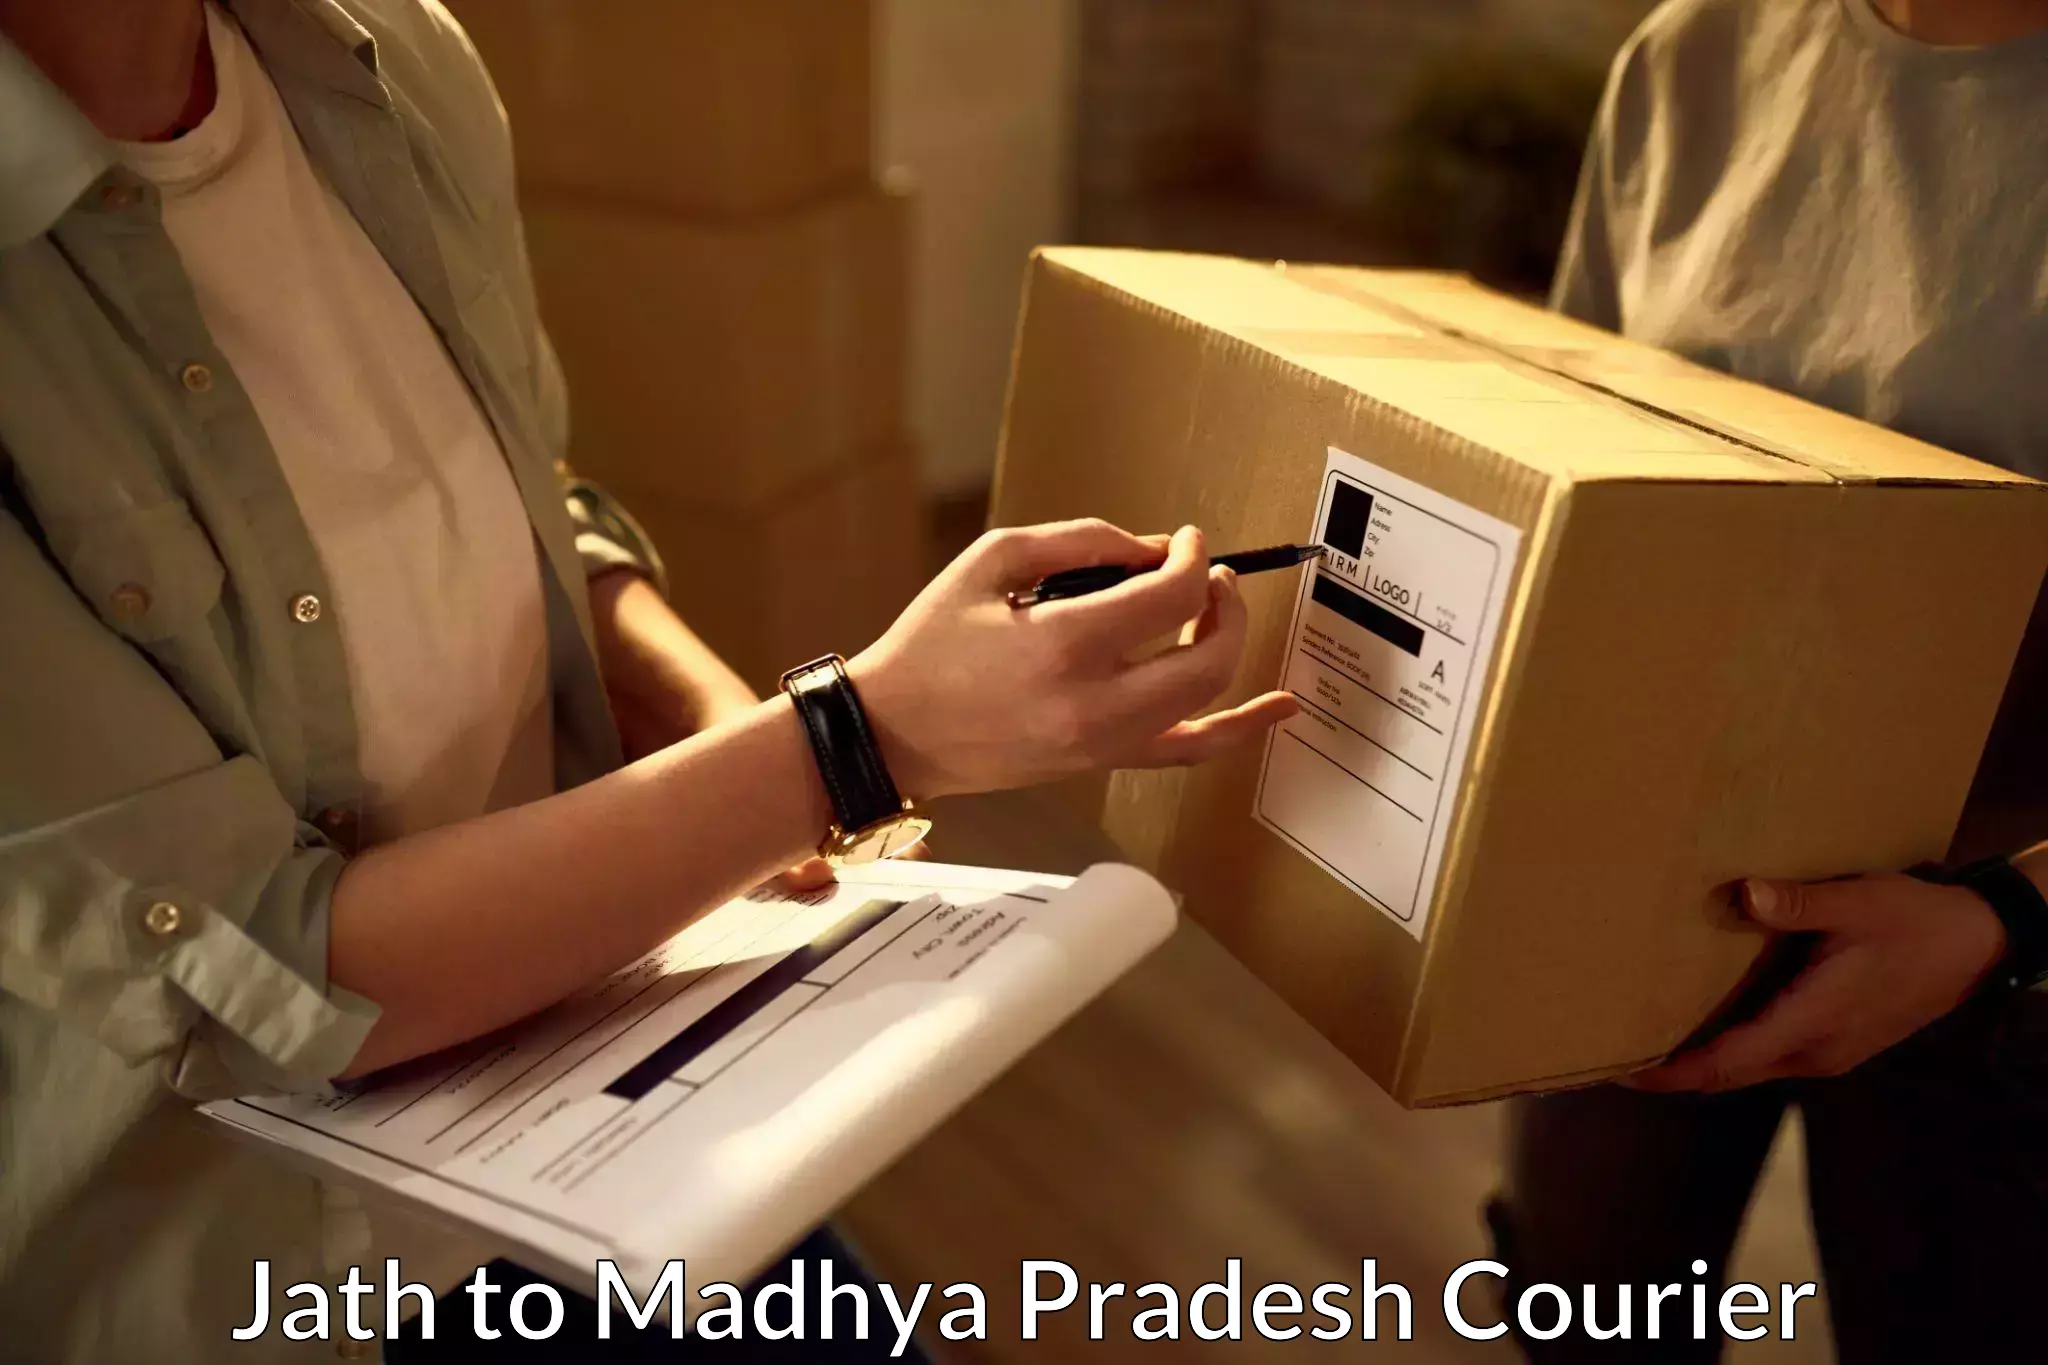 Courier service innovation Jath to Kukshi